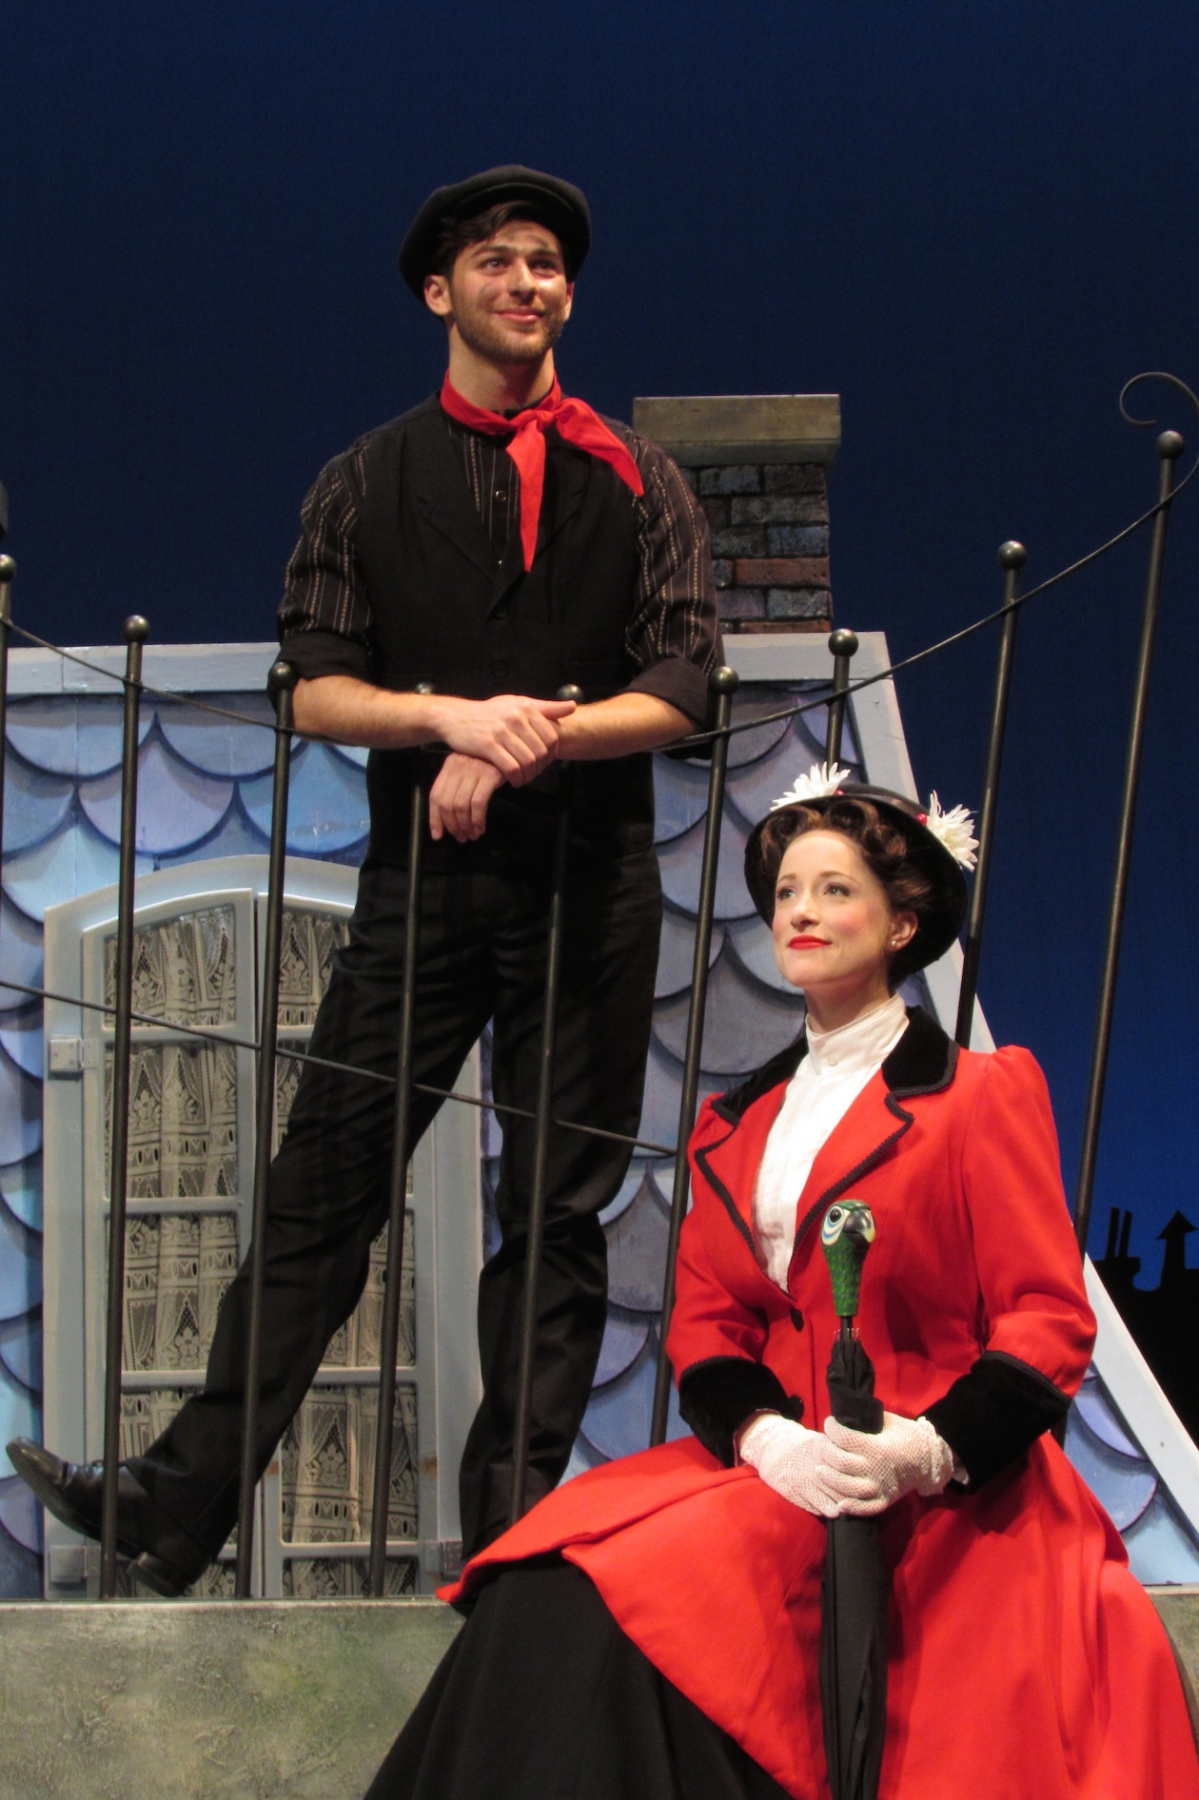 John Barsoian and Emilie Renier in "Mary Poppins" at Artpark.